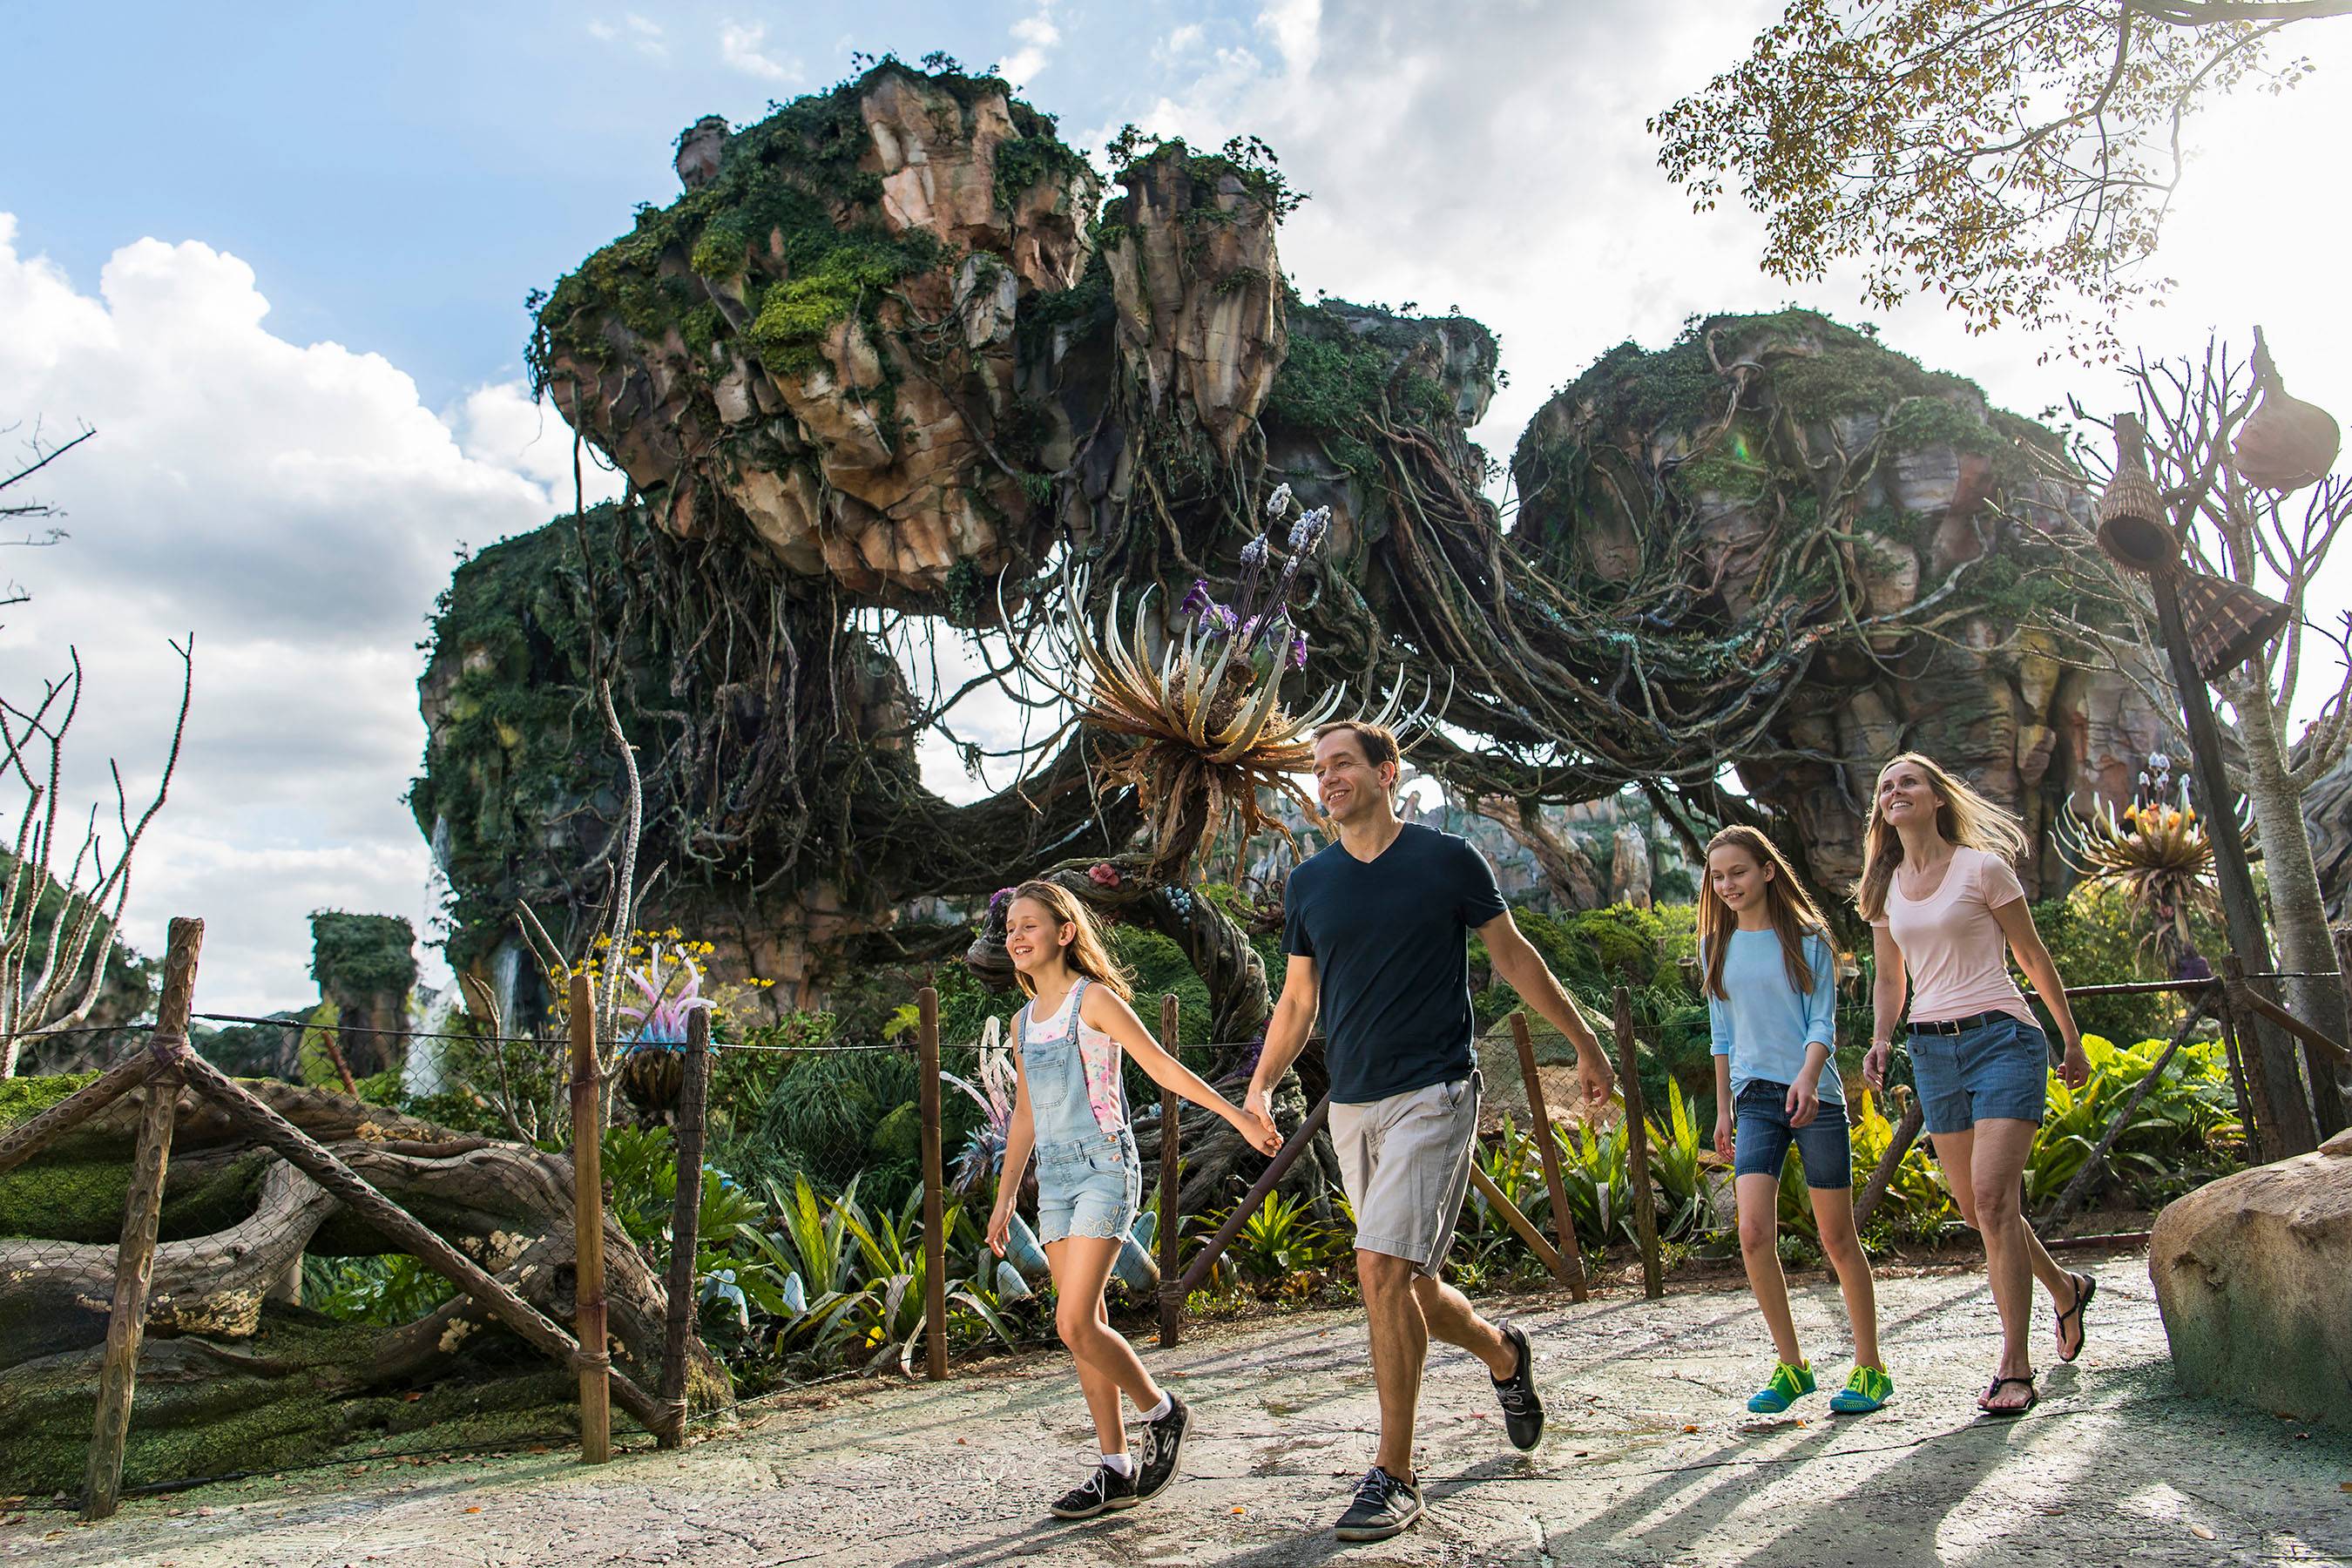 Powstaje park rozrywki inspirowany filmem Avatar Otwarcie w tym roku   WP Turystyka